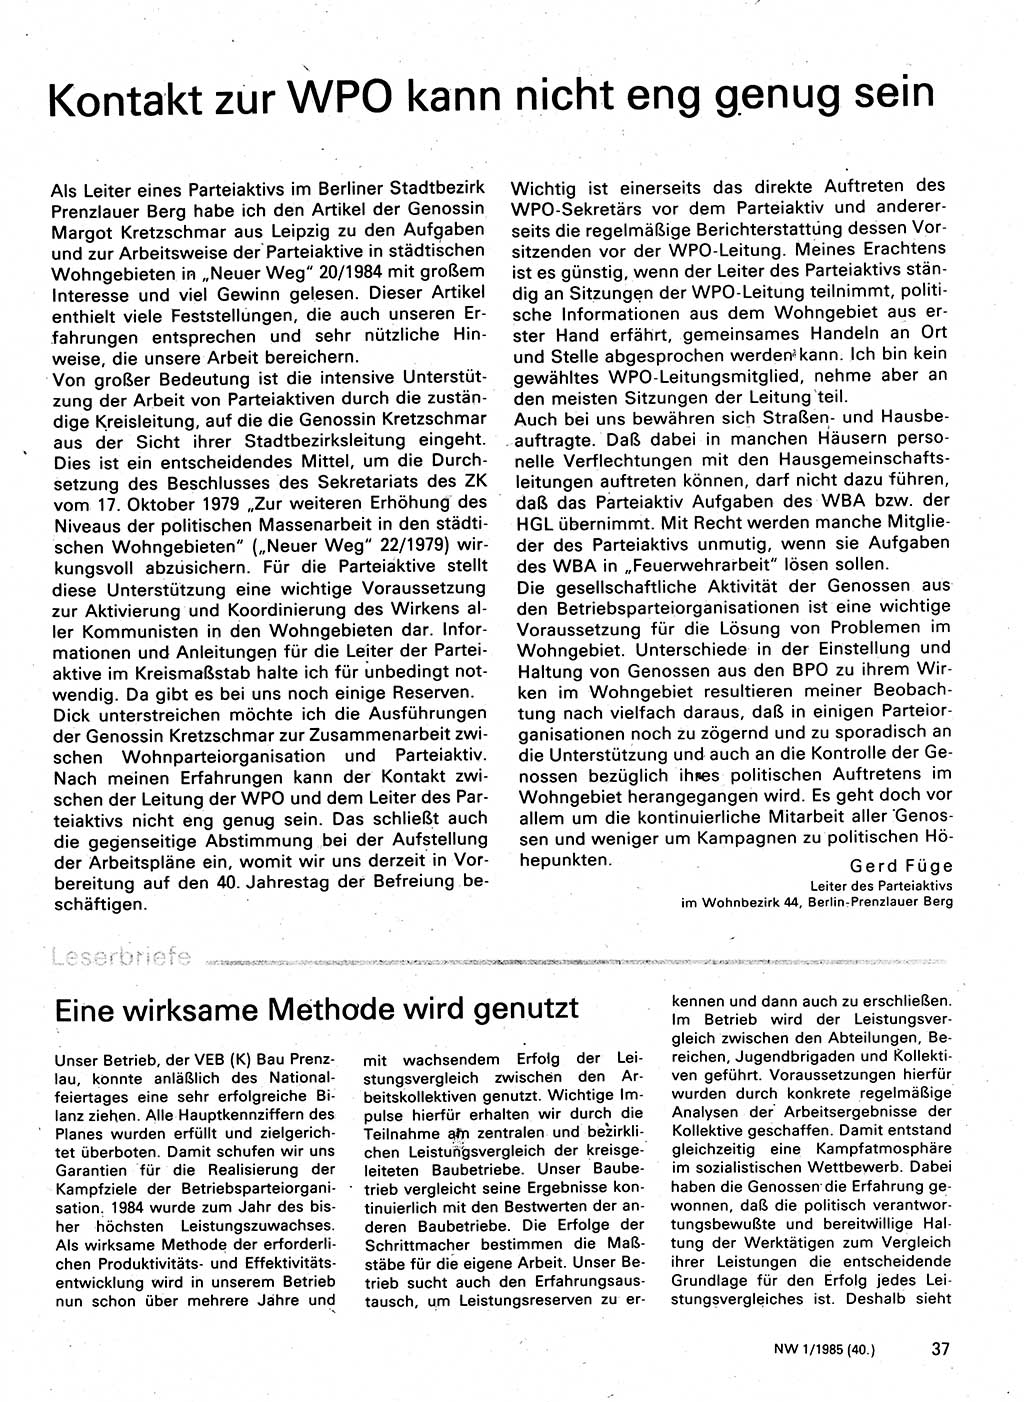 Neuer Weg (NW), Organ des Zentralkomitees (ZK) der SED (Sozialistische Einheitspartei Deutschlands) für Fragen des Parteilebens, 40. Jahrgang [Deutsche Demokratische Republik (DDR)] 1985, Seite 37 (NW ZK SED DDR 1985, S. 37)